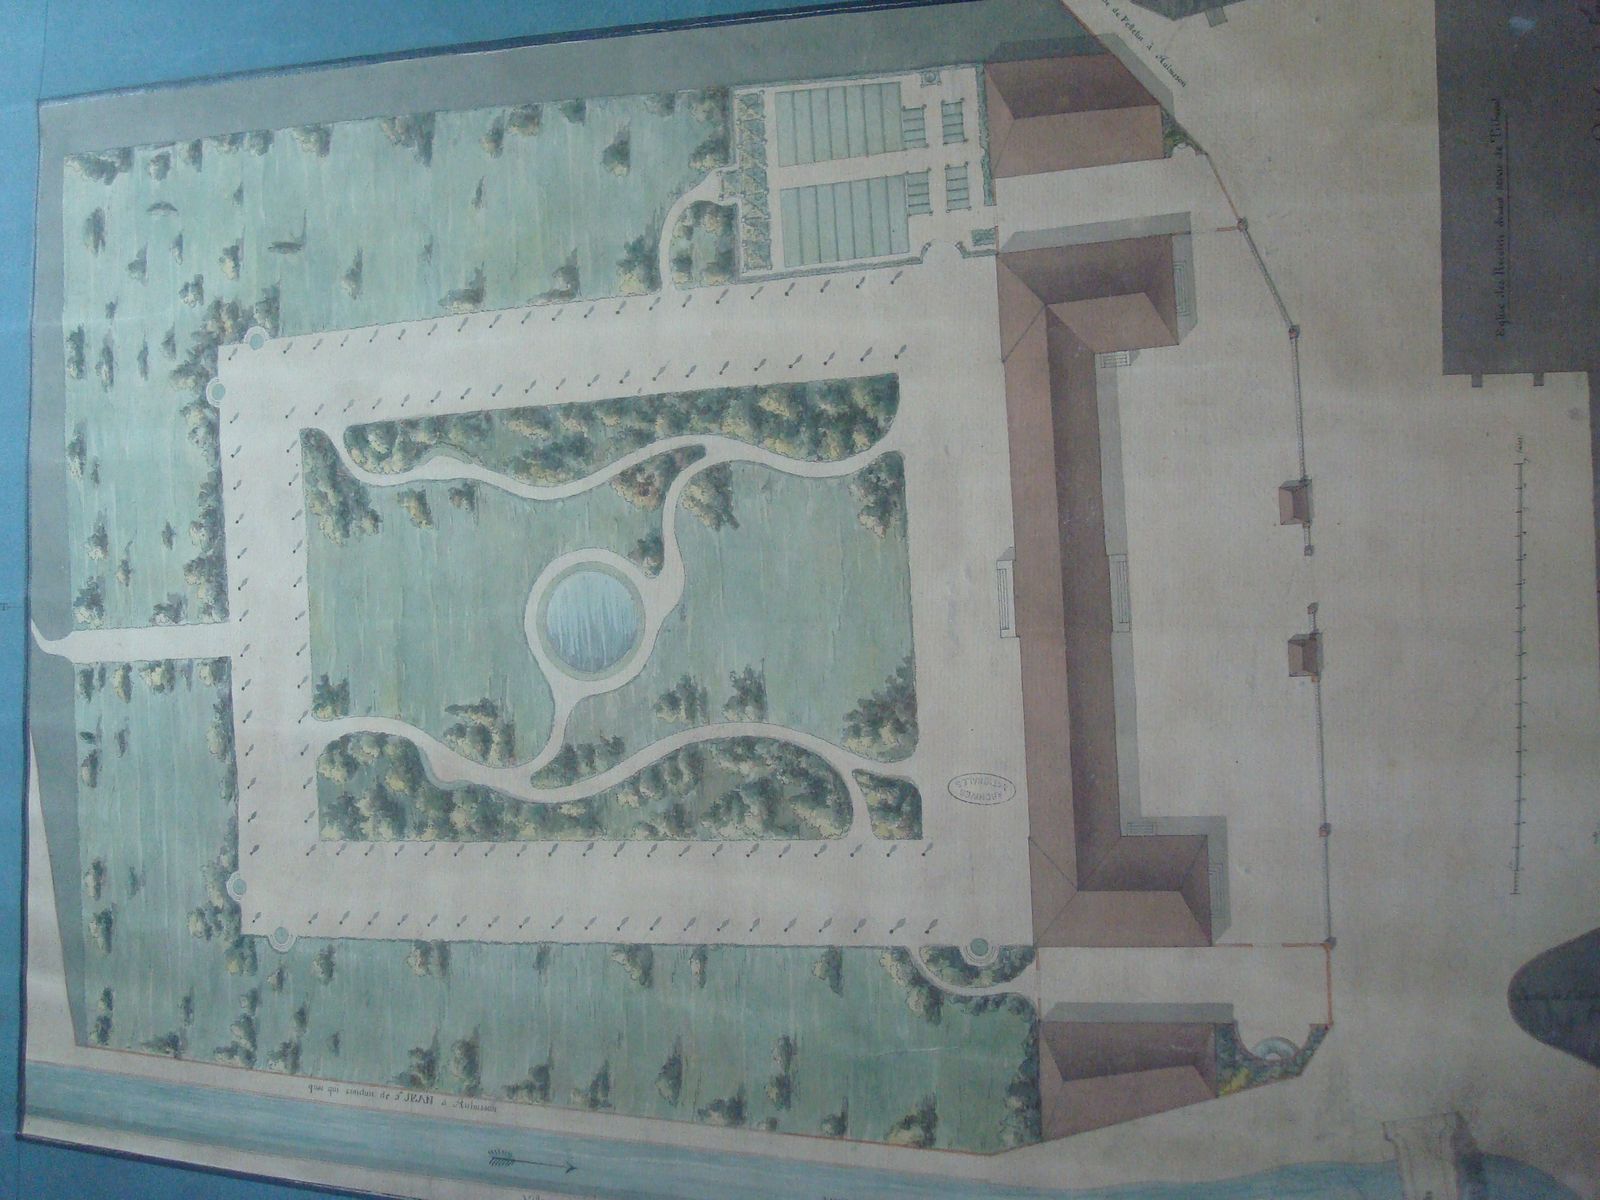 Plan masse d'un bâtiment non identifié avec deux ailes, cour et jardin anglais, peut-être un premier projet pour la manufacture de tapis Sallandrouze (Archives Nationales, fin 18e siècle)